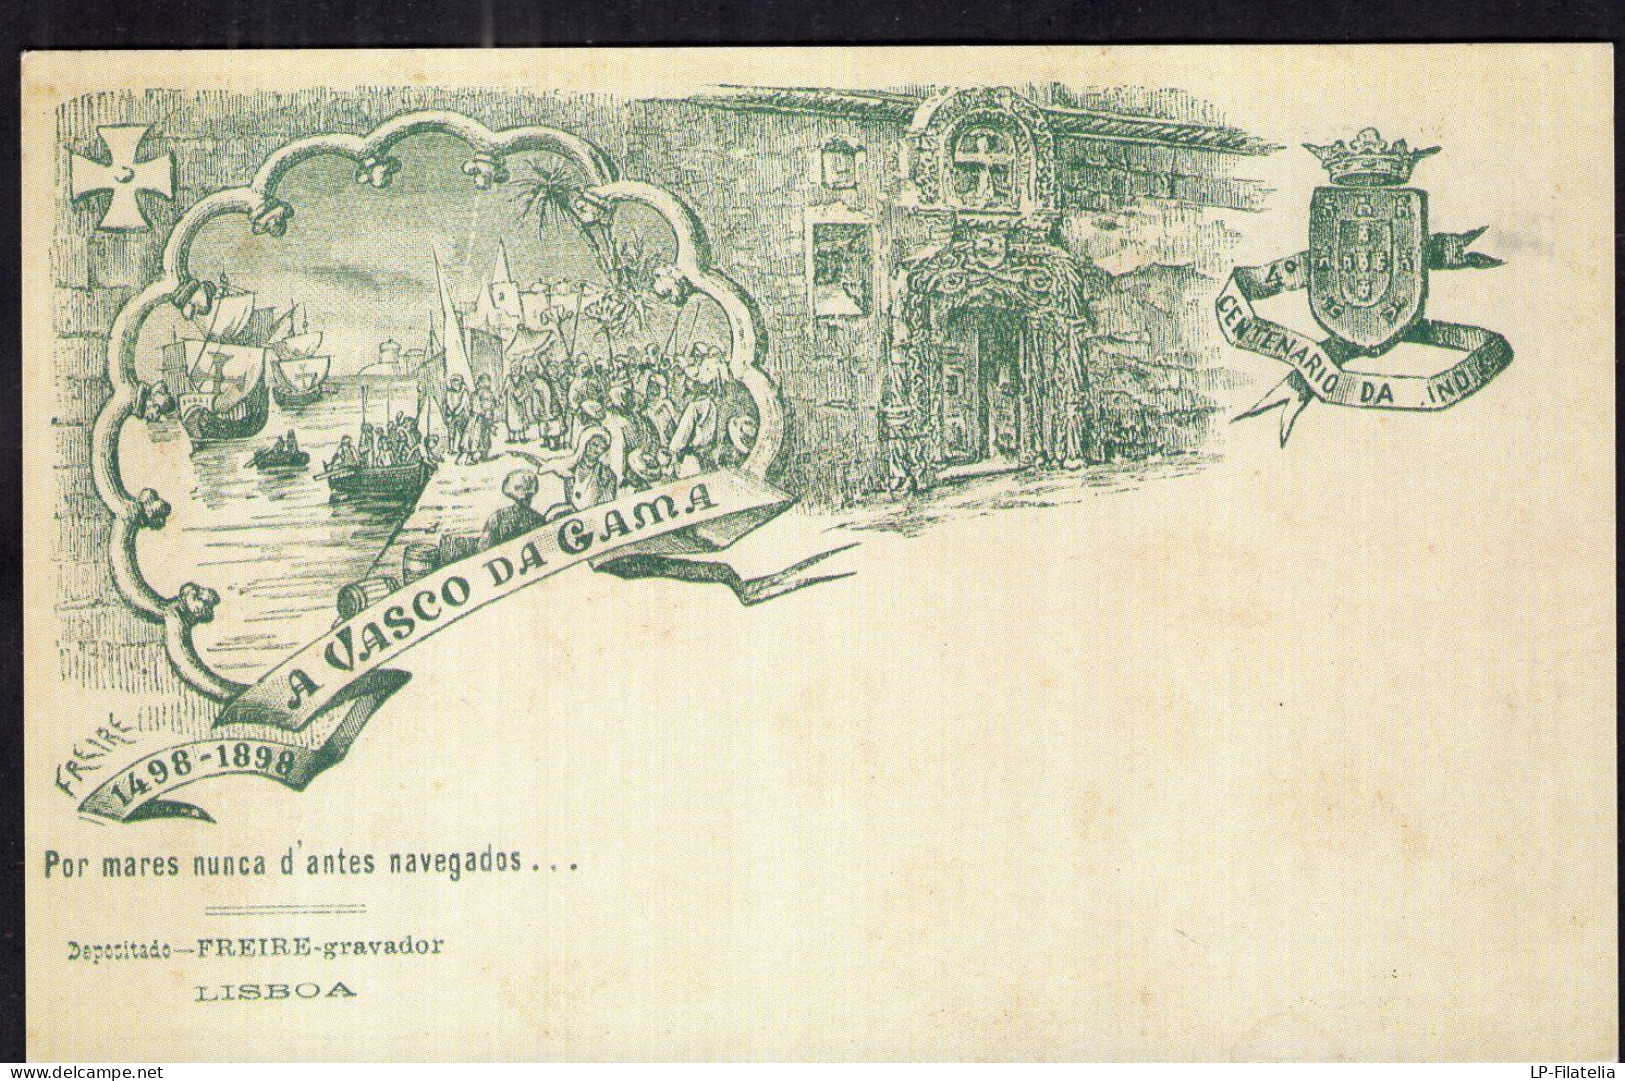 Portugal - Reproduction - 1898 - Carte Postale - Centenario Da India - 1498-1898 - Portuguese India